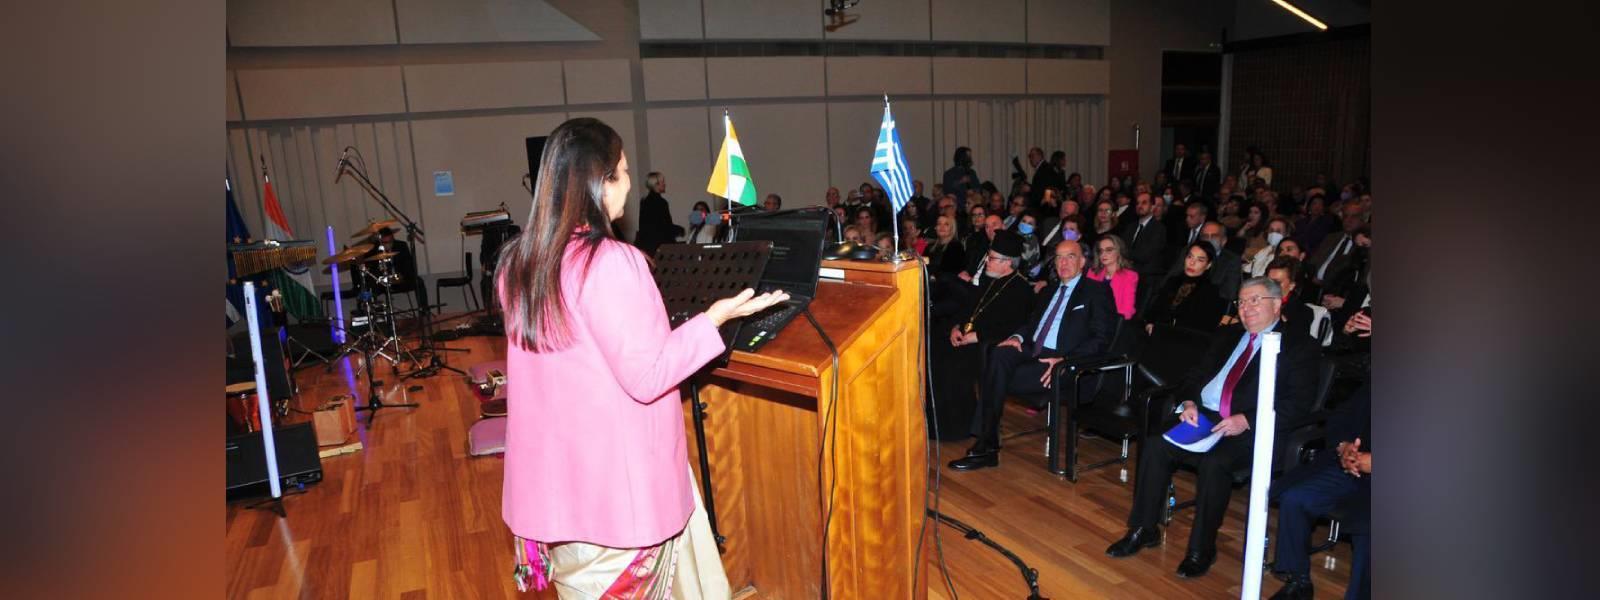 विदेश राज्य मंत्री श्रीमती मीनाक्षी लेखी ने एथेंस में 'भारत-ग्रीस मैत्री कार्यक्रम' में भाग लिया